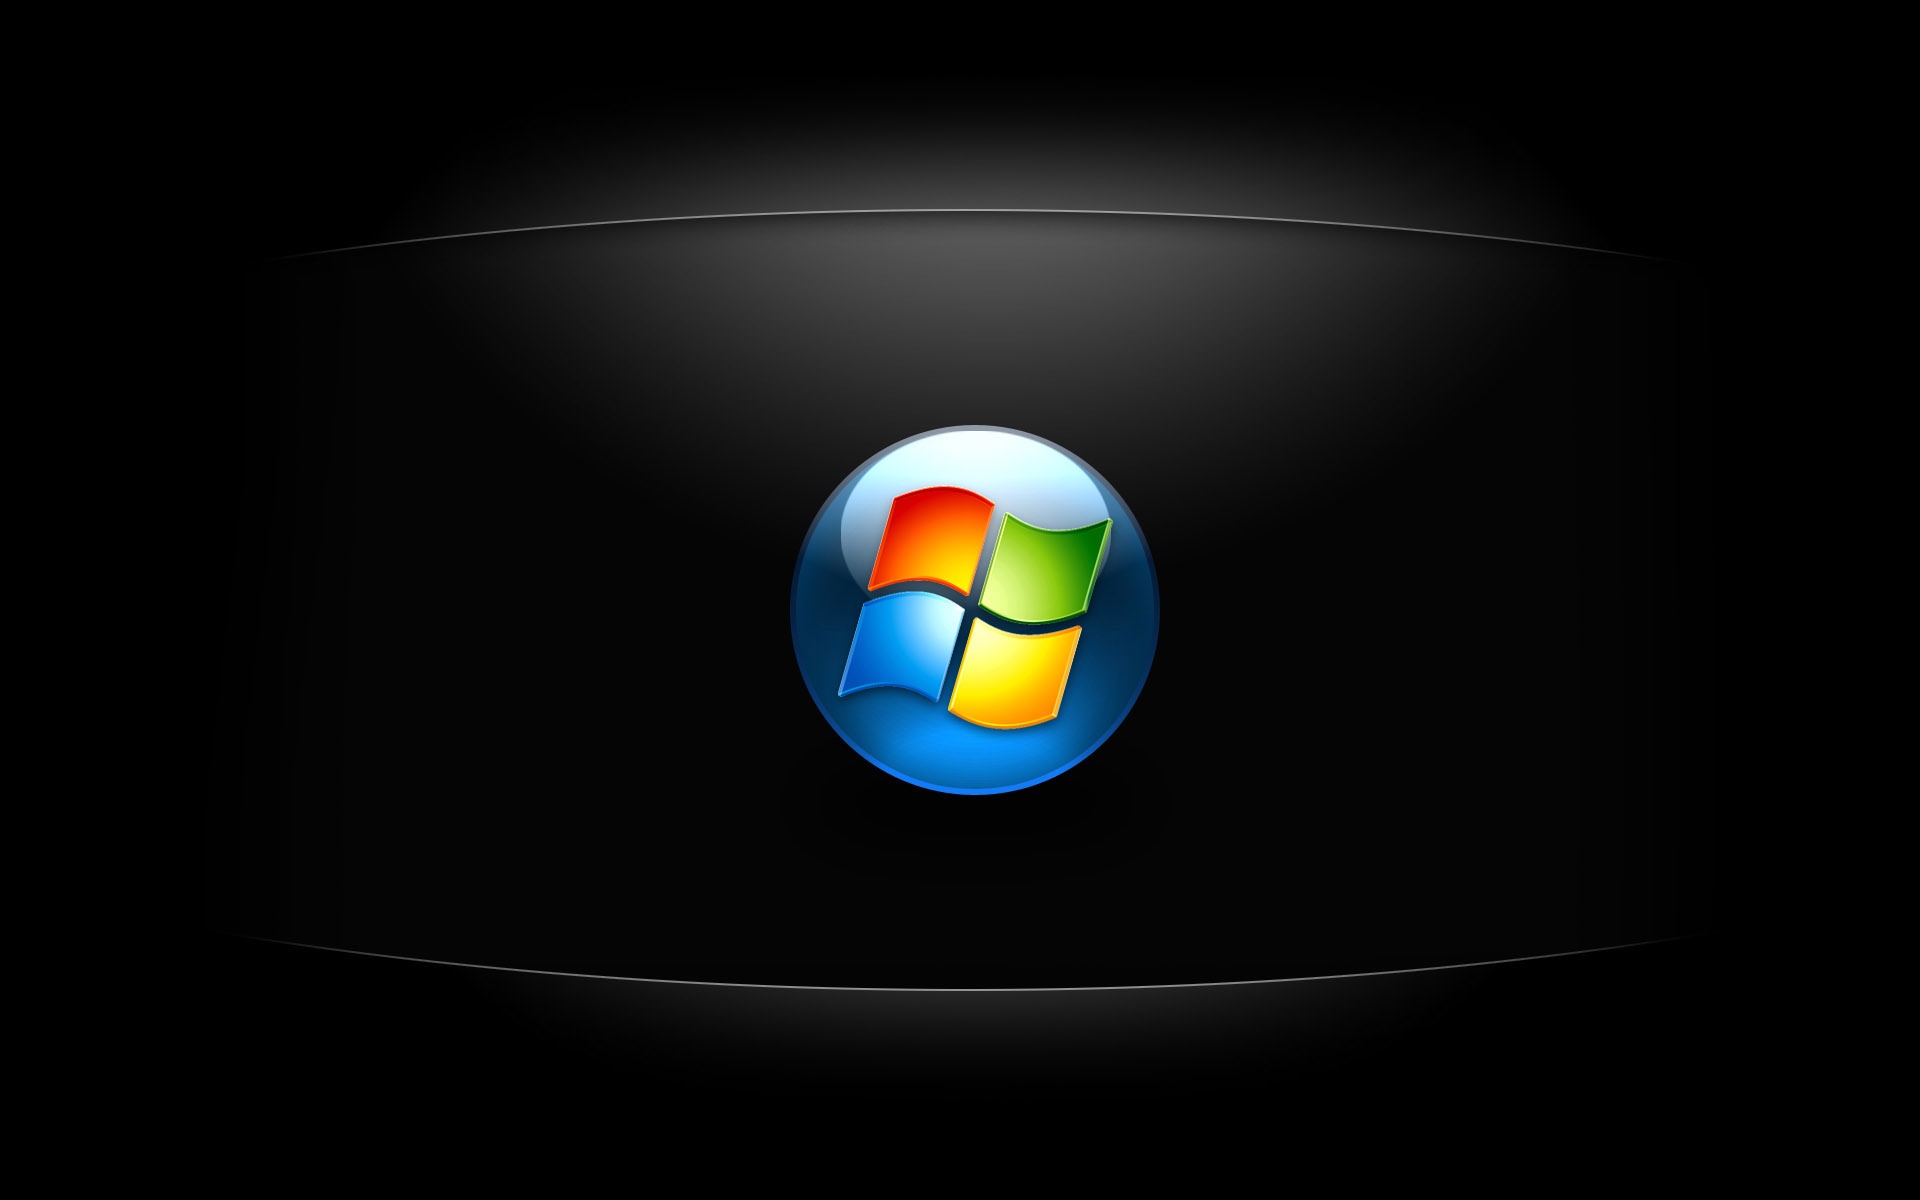 Tải hình nền Windows 7 độ phân giải cao sẽ giúp bạn tận hưởng trải nghiệm máy tính hoàn hảo. Hình nền độ phân giải cao sẽ làm cho hình ảnh trở nên sắc nét và sống động hơn bao giờ hết.